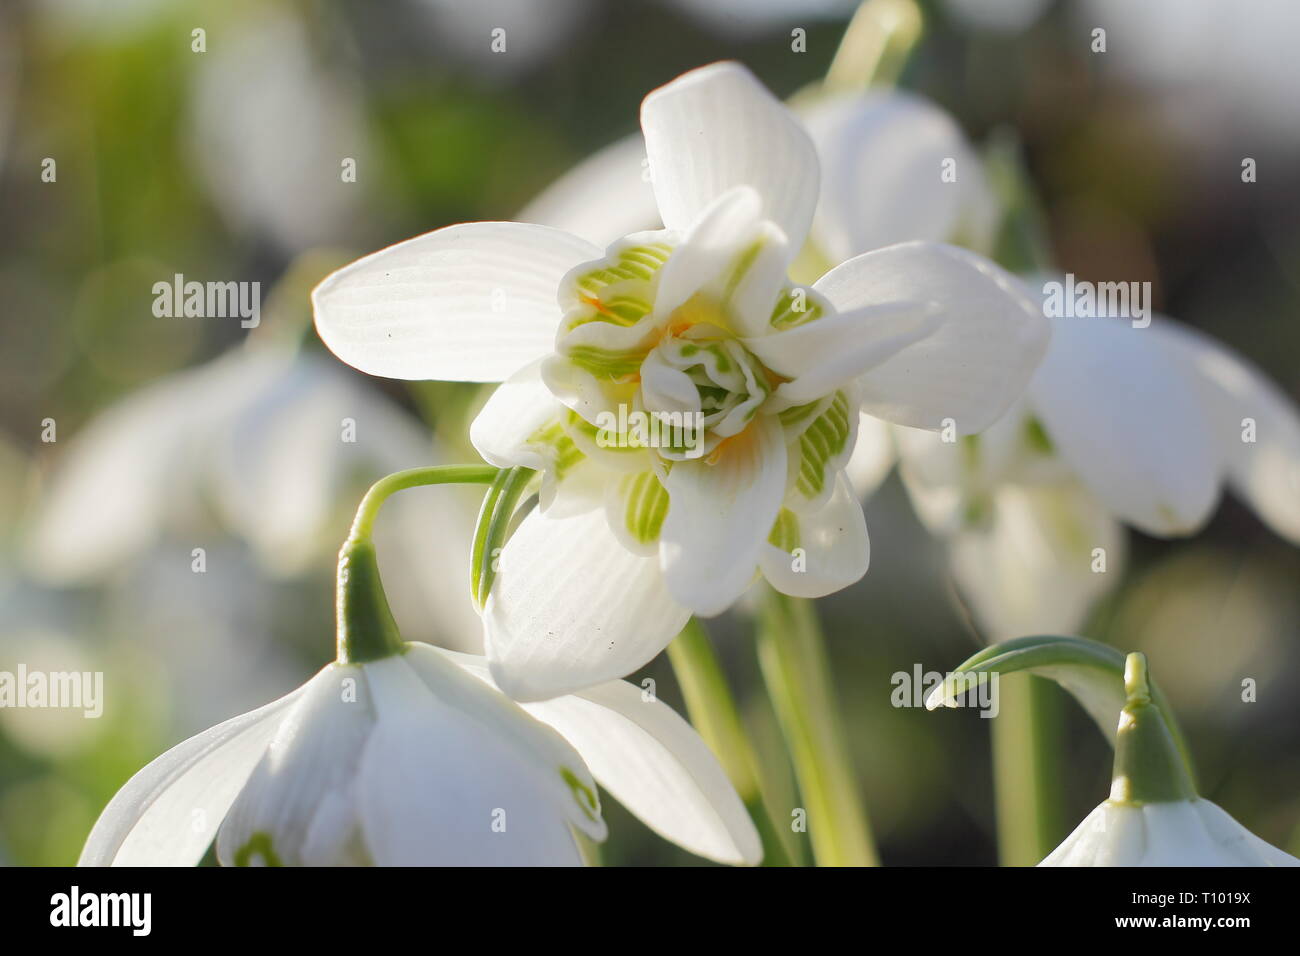 Galanthus nivalis f. pleniflorus 'Flore Pleno'. Duftende Blüten von 'Flore Pleno' Schneeglöckchen in einem britischen Garten - Februar, Großbritannien. Hauptversammlung Stockfoto